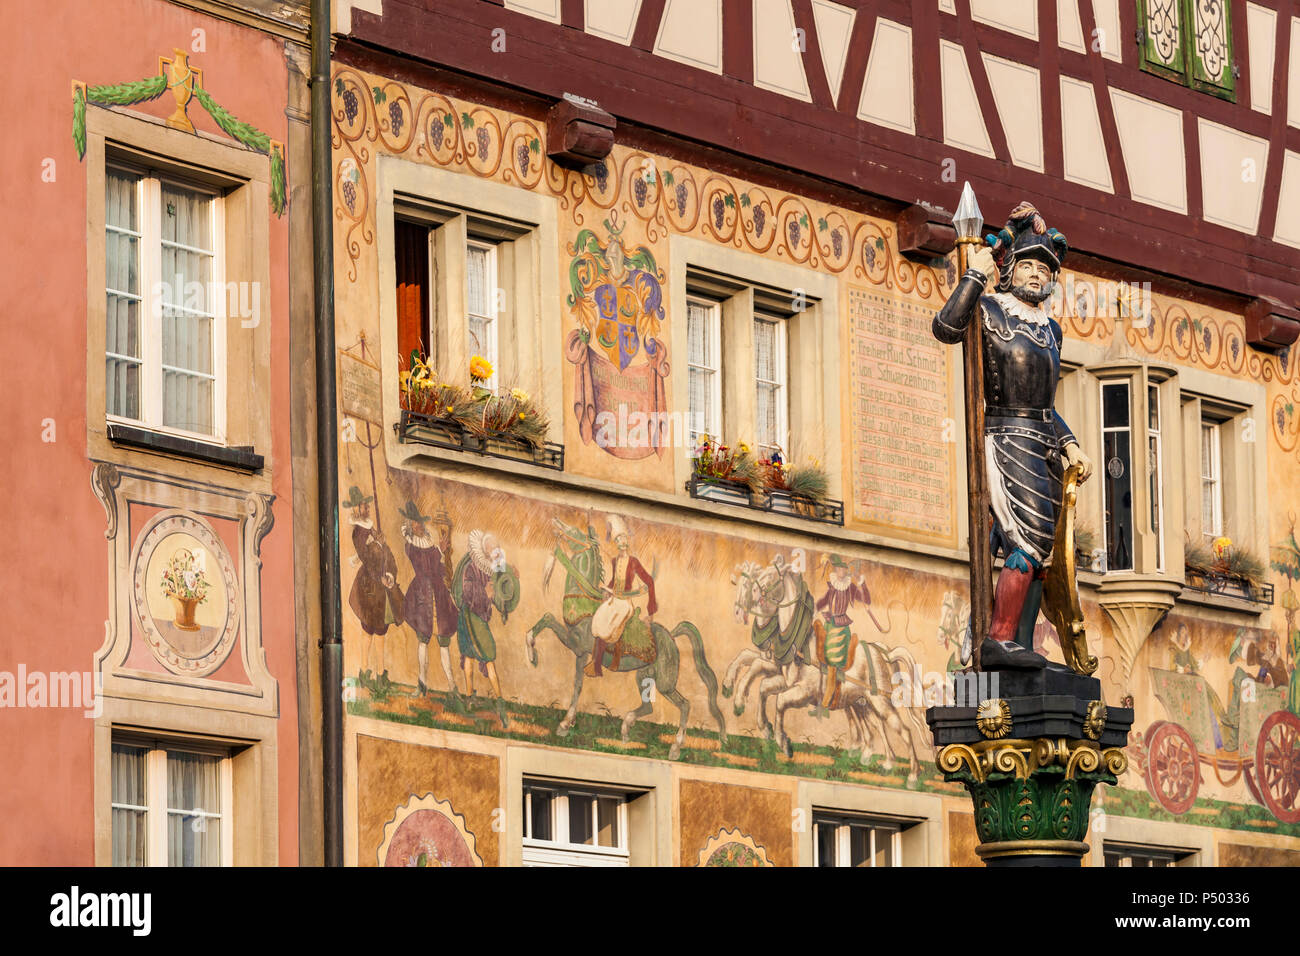 Schweiz, Stein am Rhein, Altstadt, historische Häuser am Rathausplatz,  Fresken, Skulpturen am Brunnen Stockfotografie - Alamy